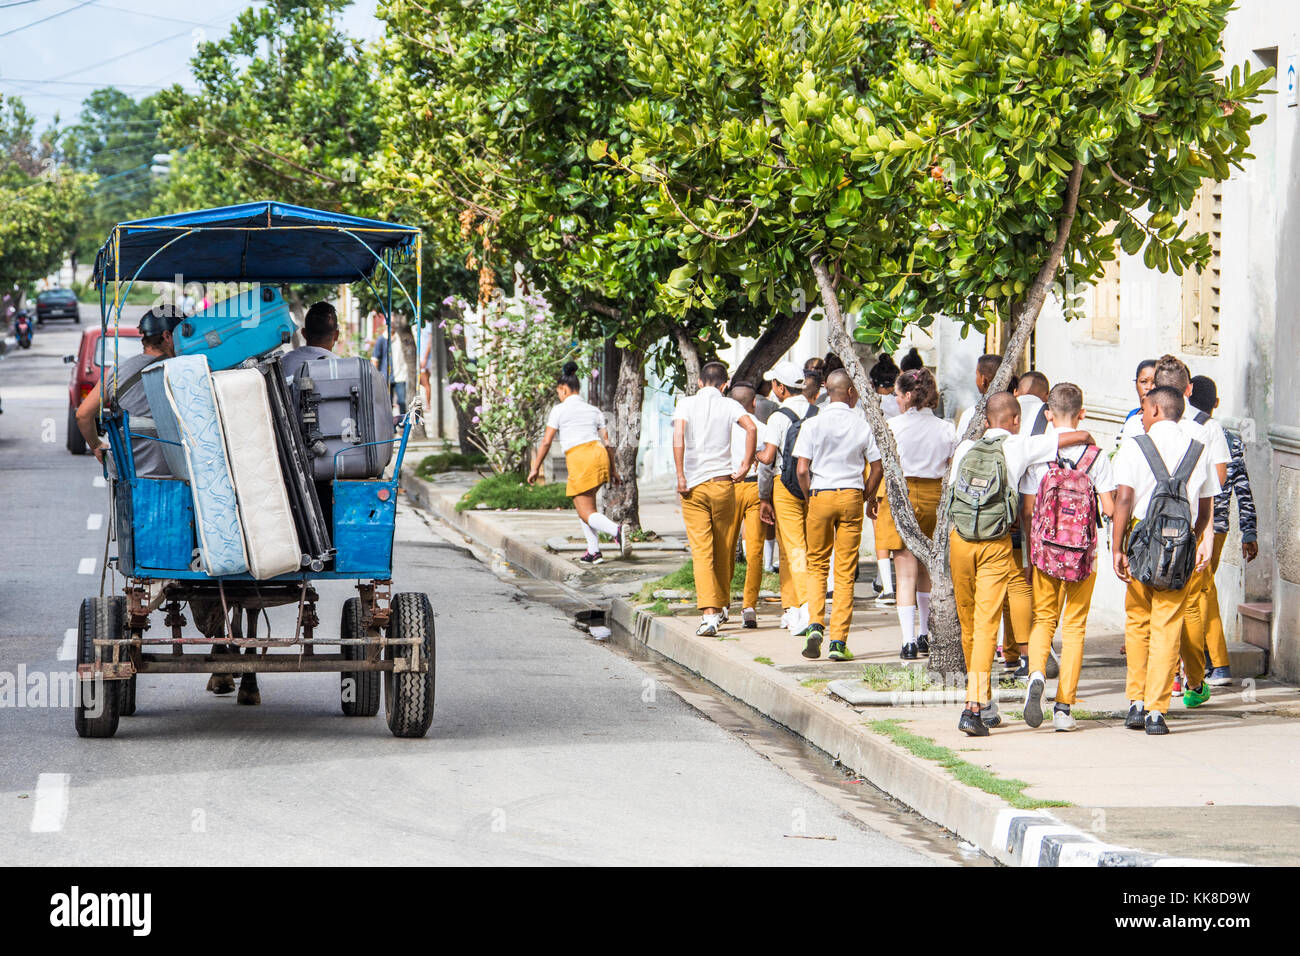 Les élèves à l'école à pied par berside un cheval transport déménagement possessions, Cienfuegos, Cuba Banque D'Images